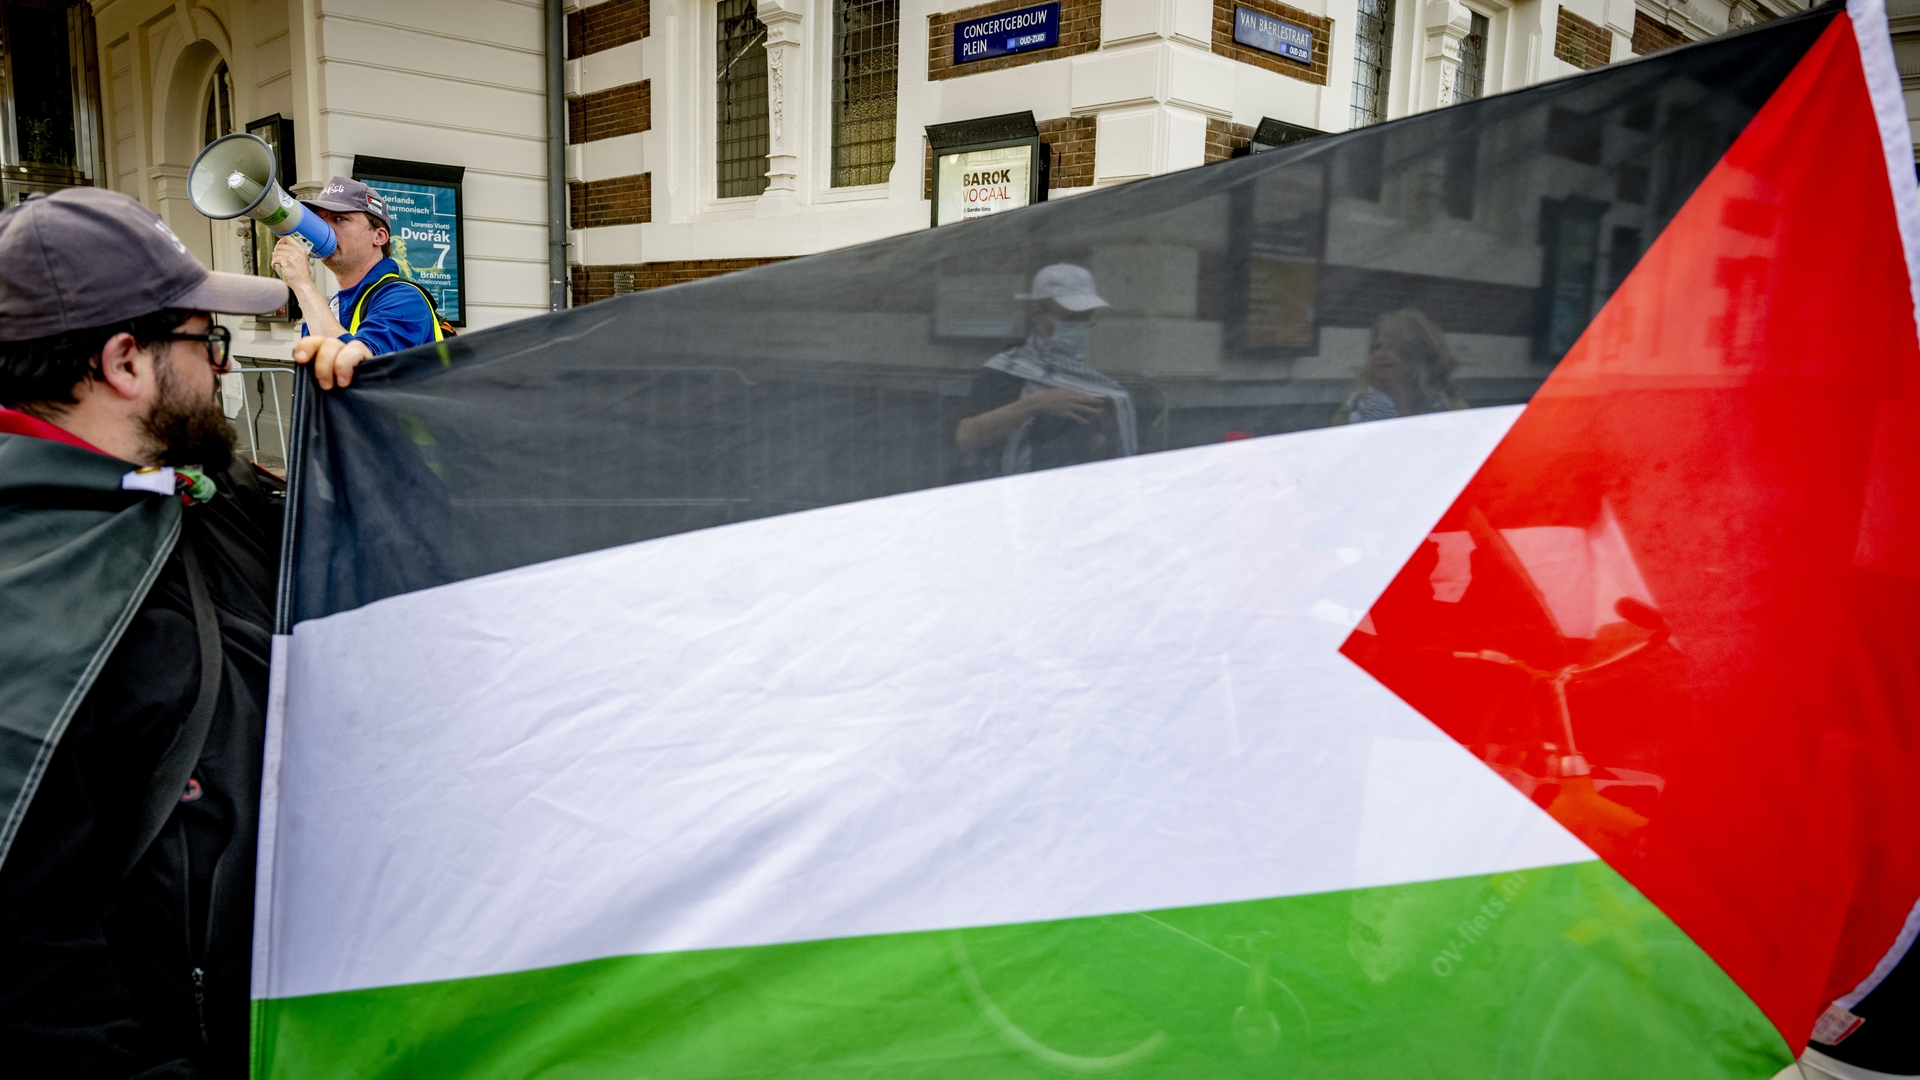 palestijnsevlag